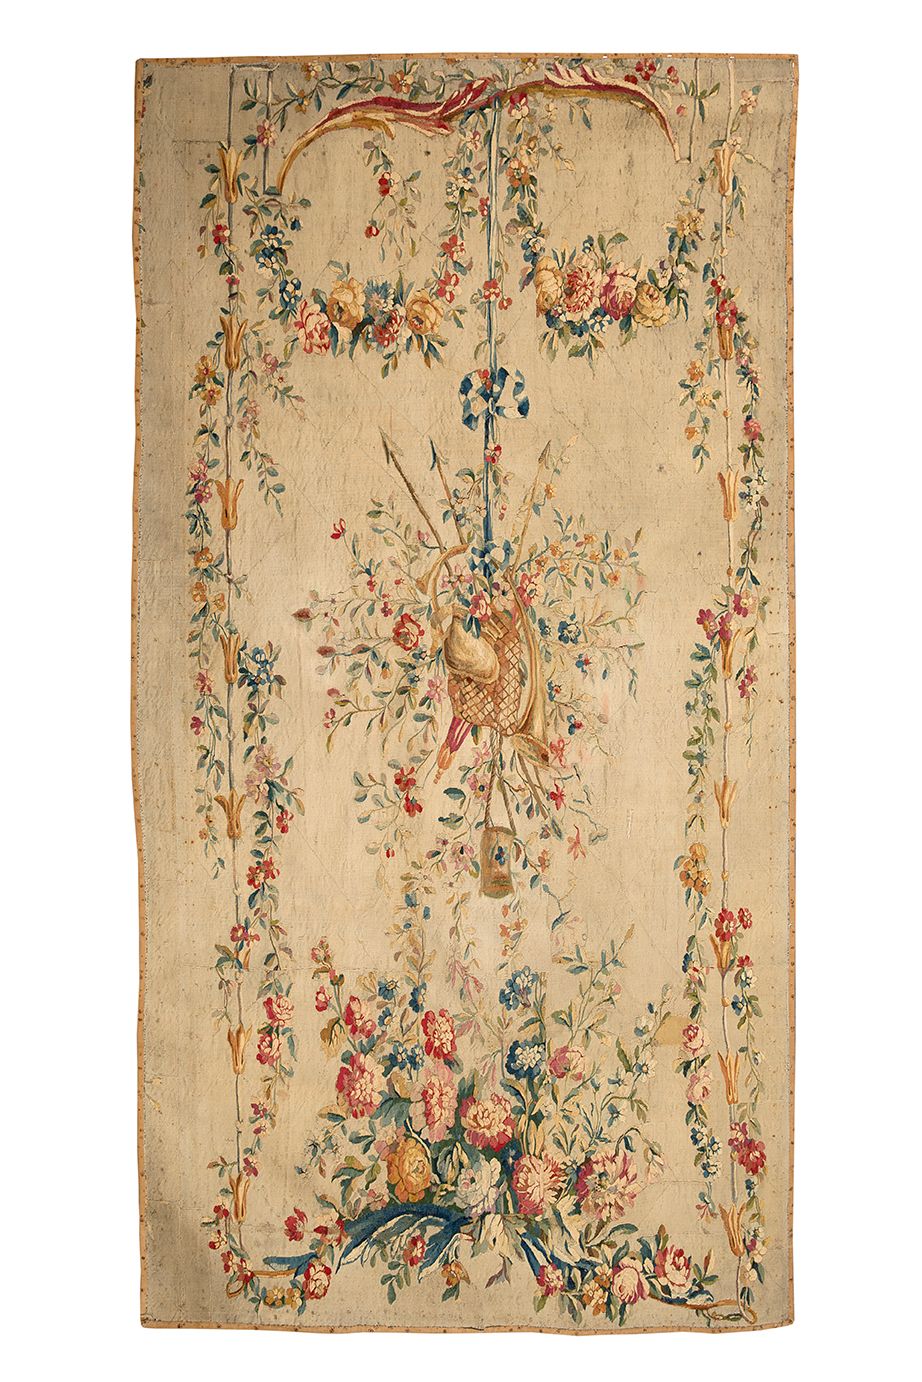 Null 饰有音乐属性和花束的塔帕斯图画。用羊毛和丝绸织成。
奥布松，18世纪最后四分之一。
高225，宽128,5厘米
(颜色漂亮。总体状况良好，有些磨损)
&hellip;